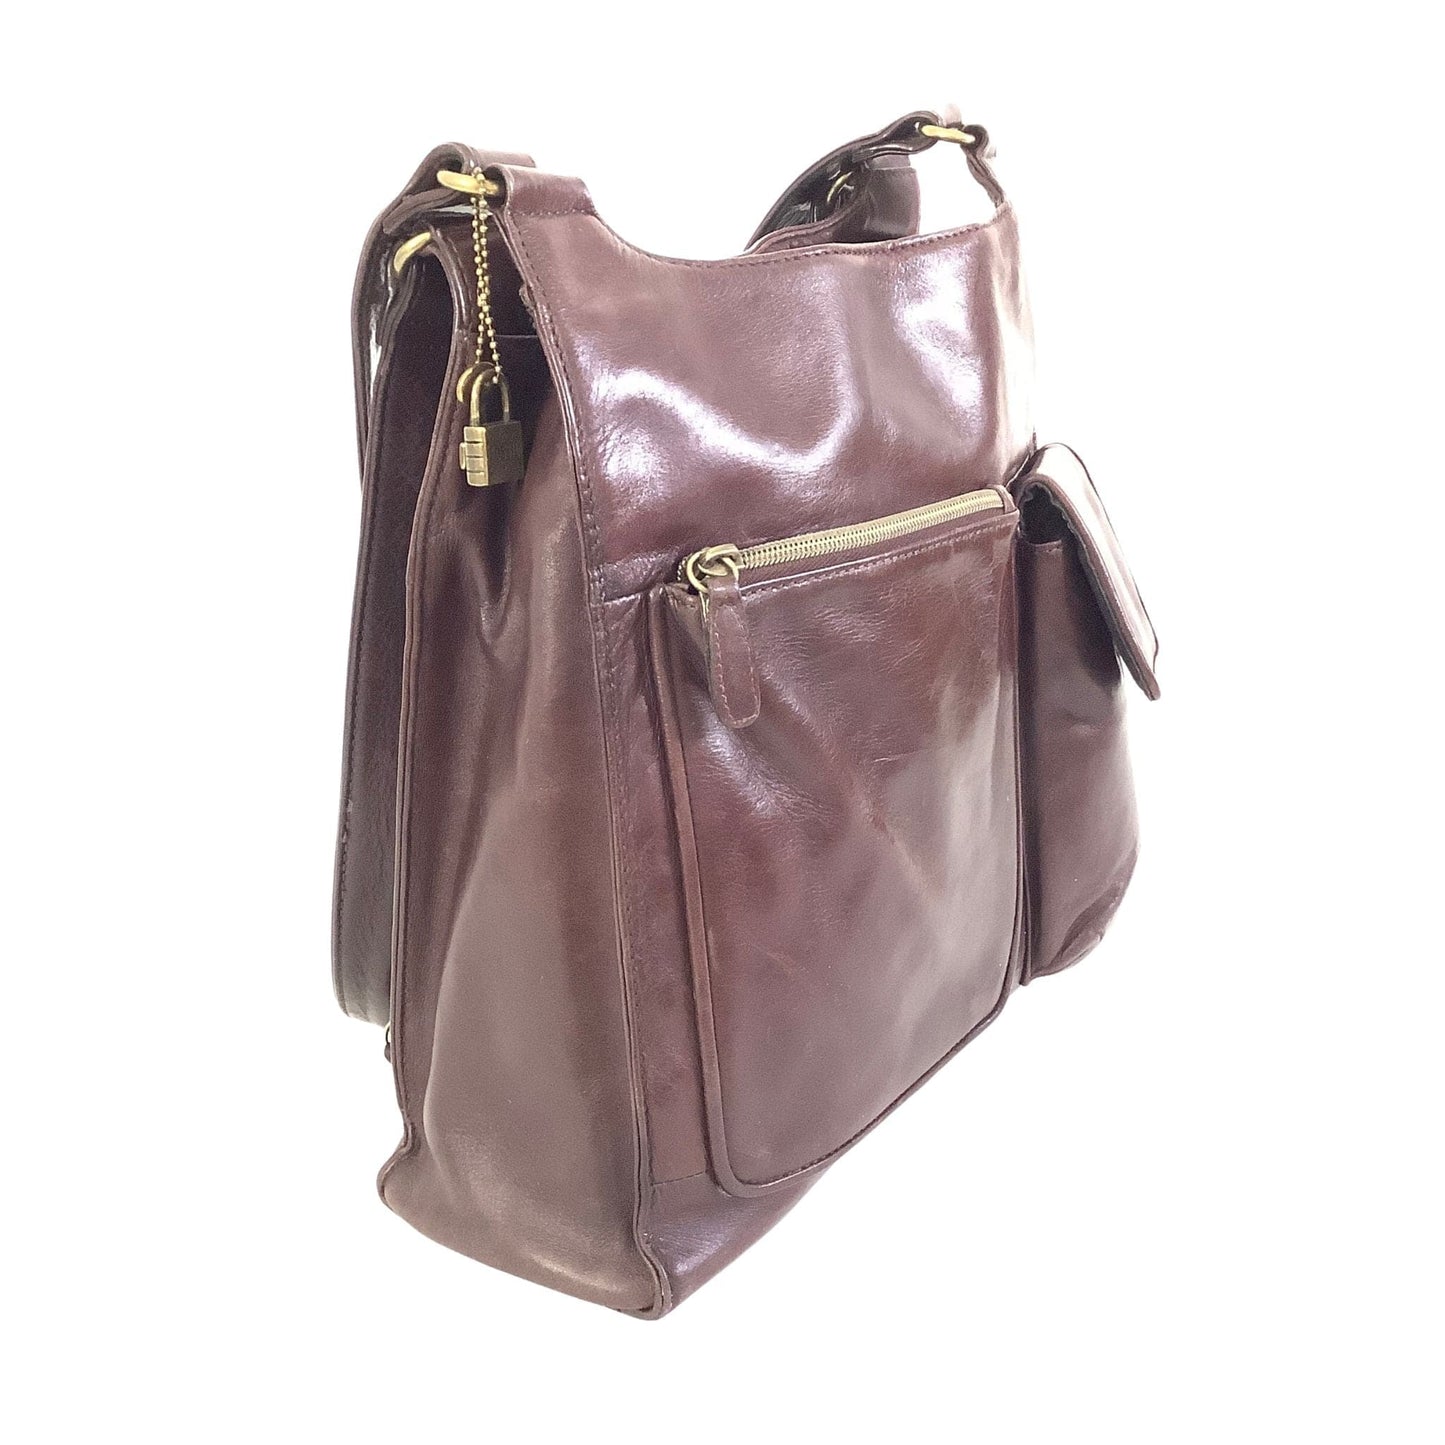 Fossil Shoulder Bag Brown / Leather / Vintage 1990s